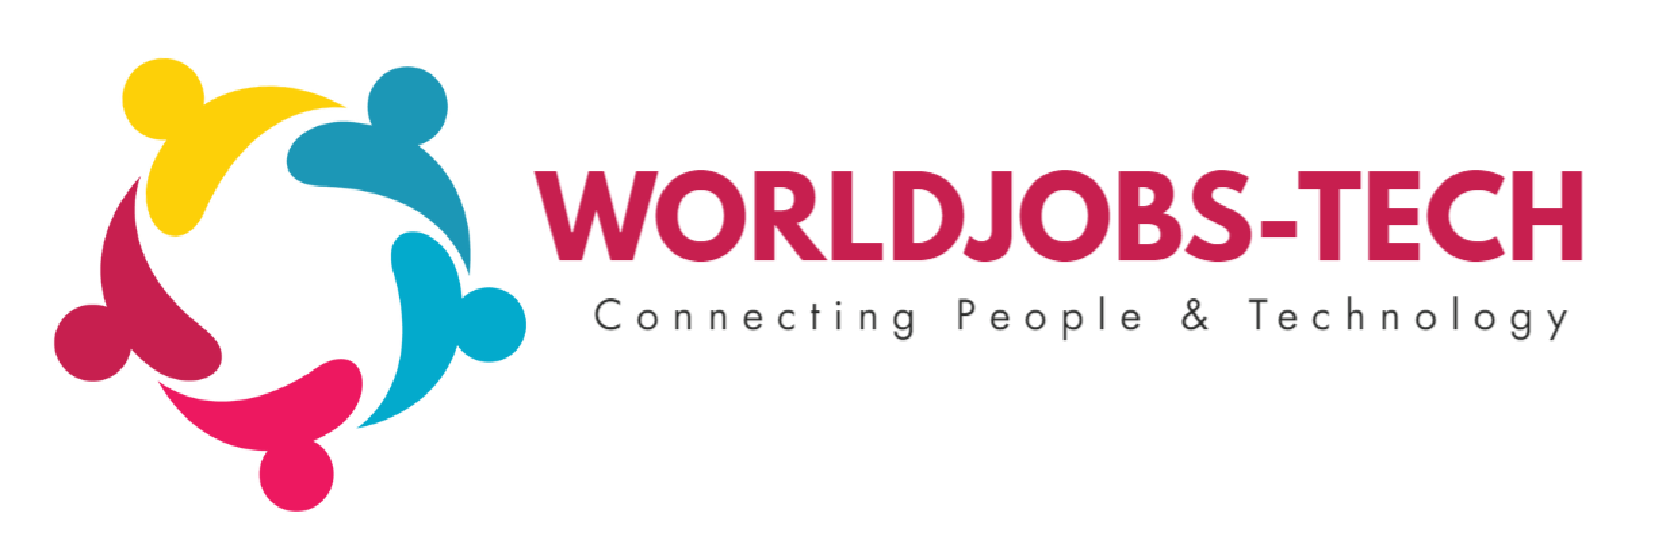 worldjobs tech